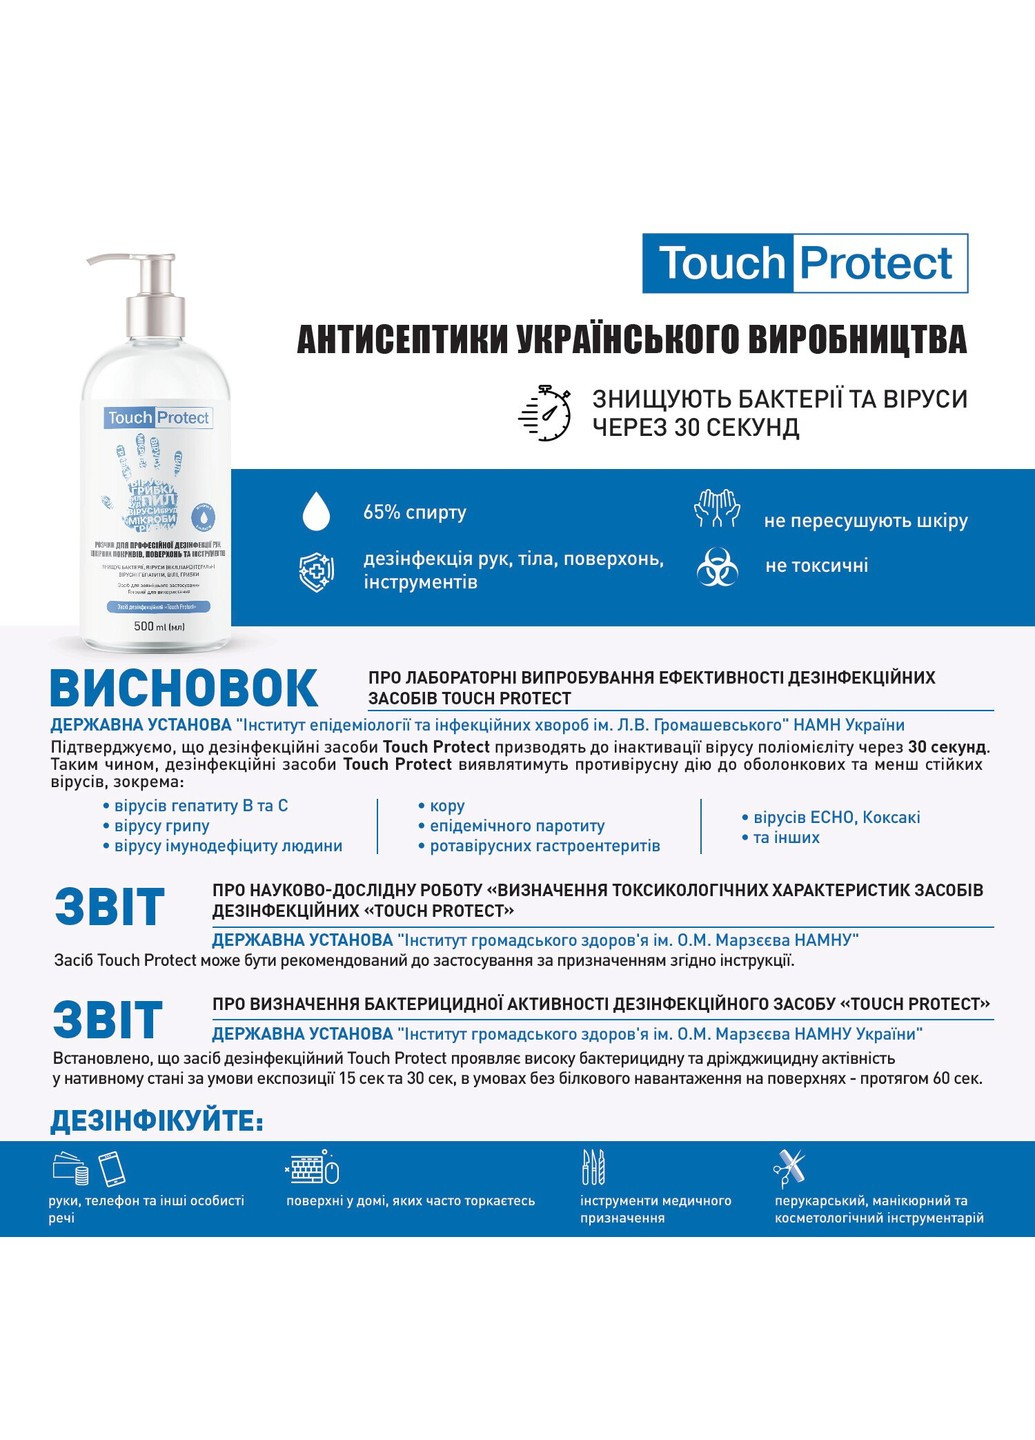 Антисептик раствор для дезинфекции рук, тела, поверхностей и инструментов 10 л Touch Protect (255417762)